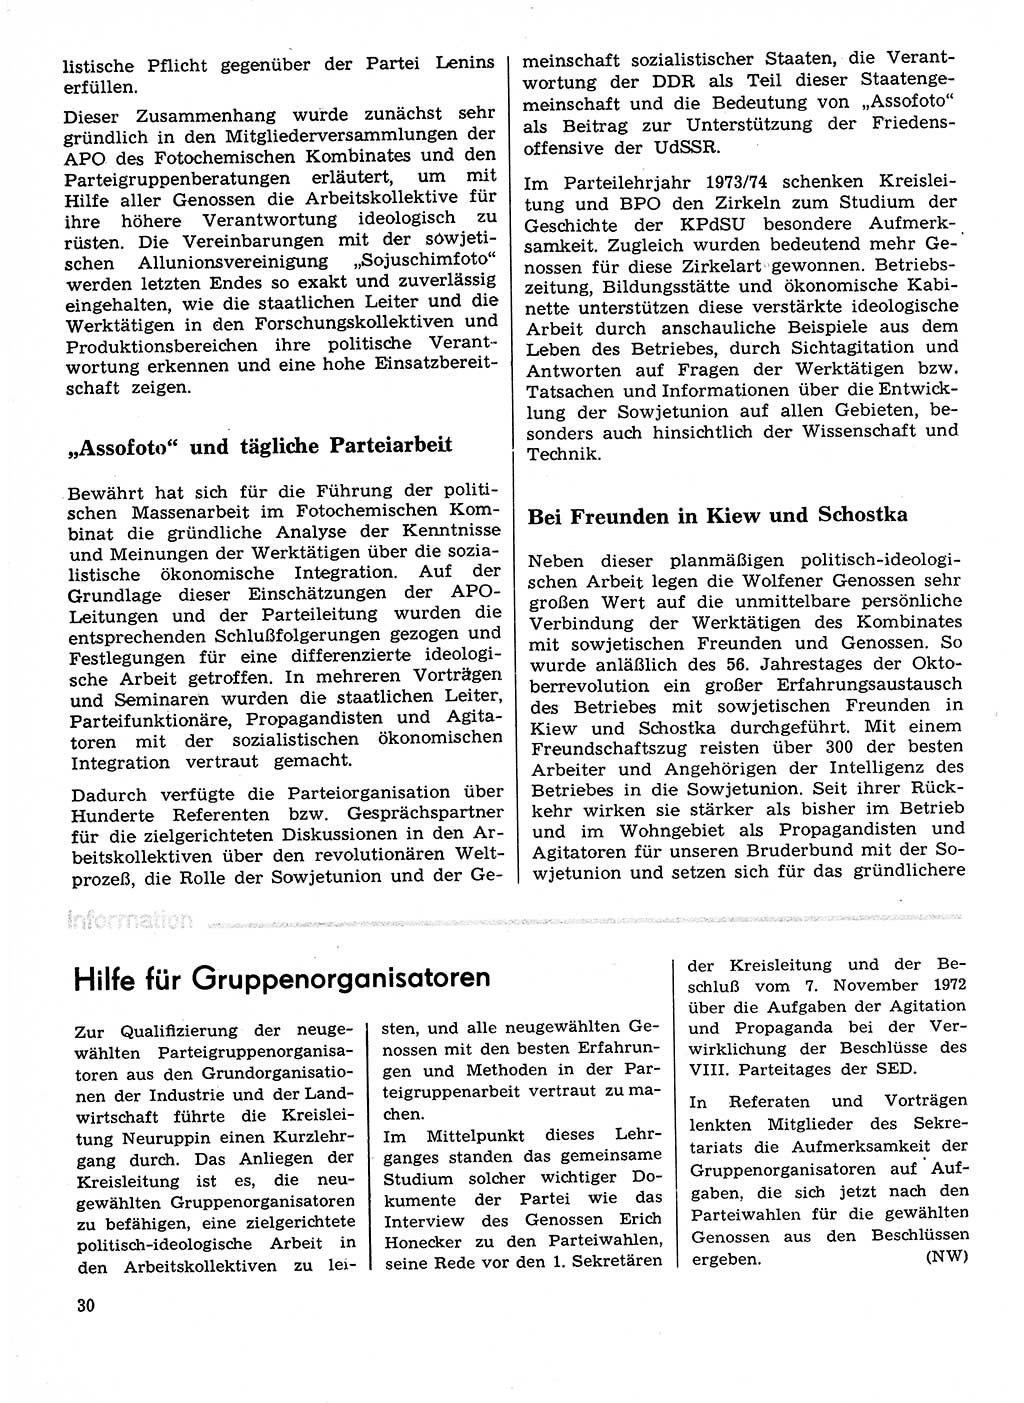 Neuer Weg (NW), Organ des Zentralkomitees (ZK) der SED (Sozialistische Einheitspartei Deutschlands) für Fragen des Parteilebens, 29. Jahrgang [Deutsche Demokratische Republik (DDR)] 1974, Seite 30 (NW ZK SED DDR 1974, S. 30)